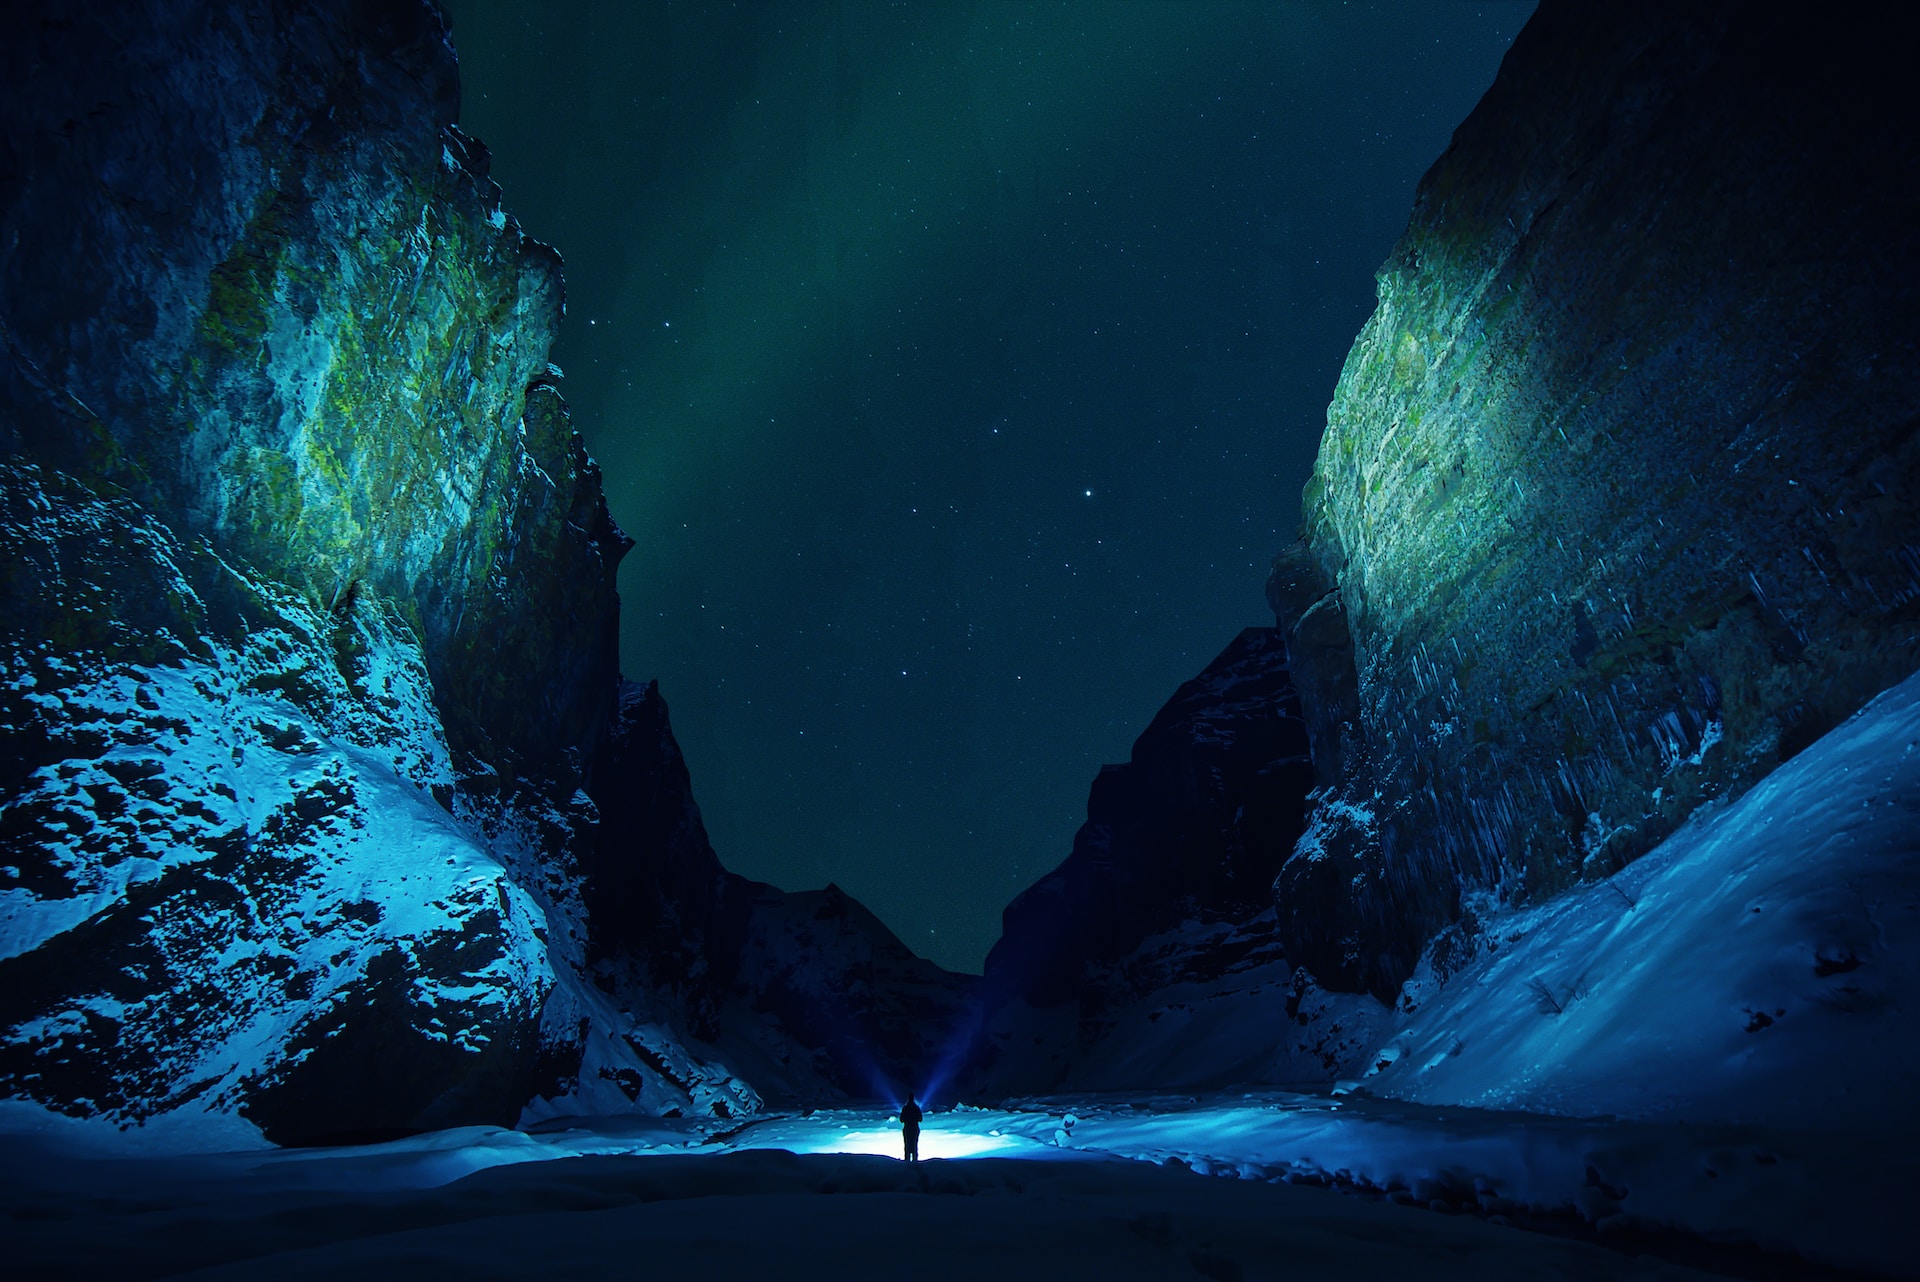 Iceland hidden gems valleys and auroras